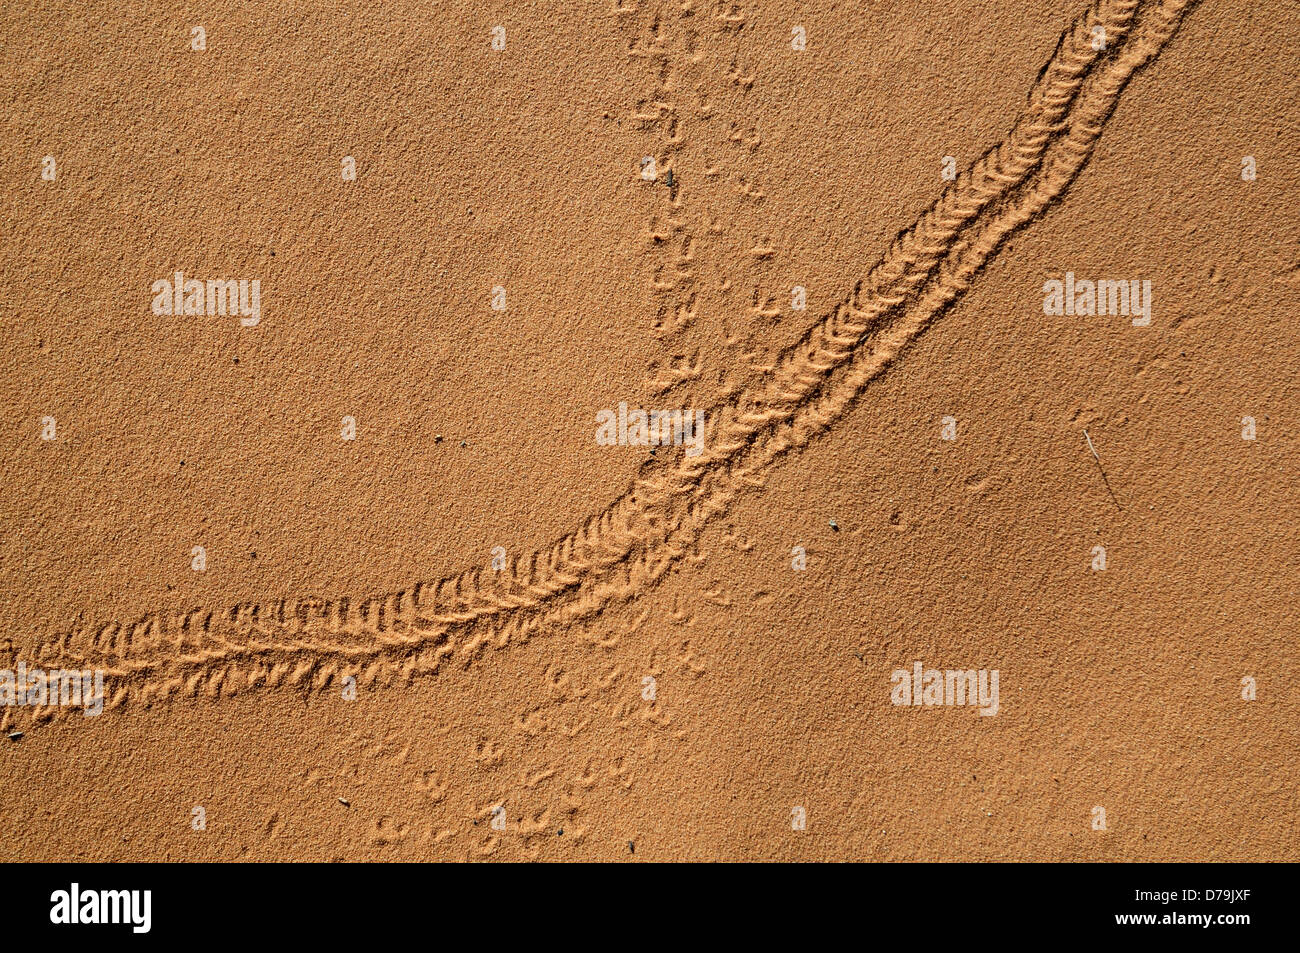 Lizard piccolo mammifero vie via traccia marcature mark sand desert trail Foto Stock